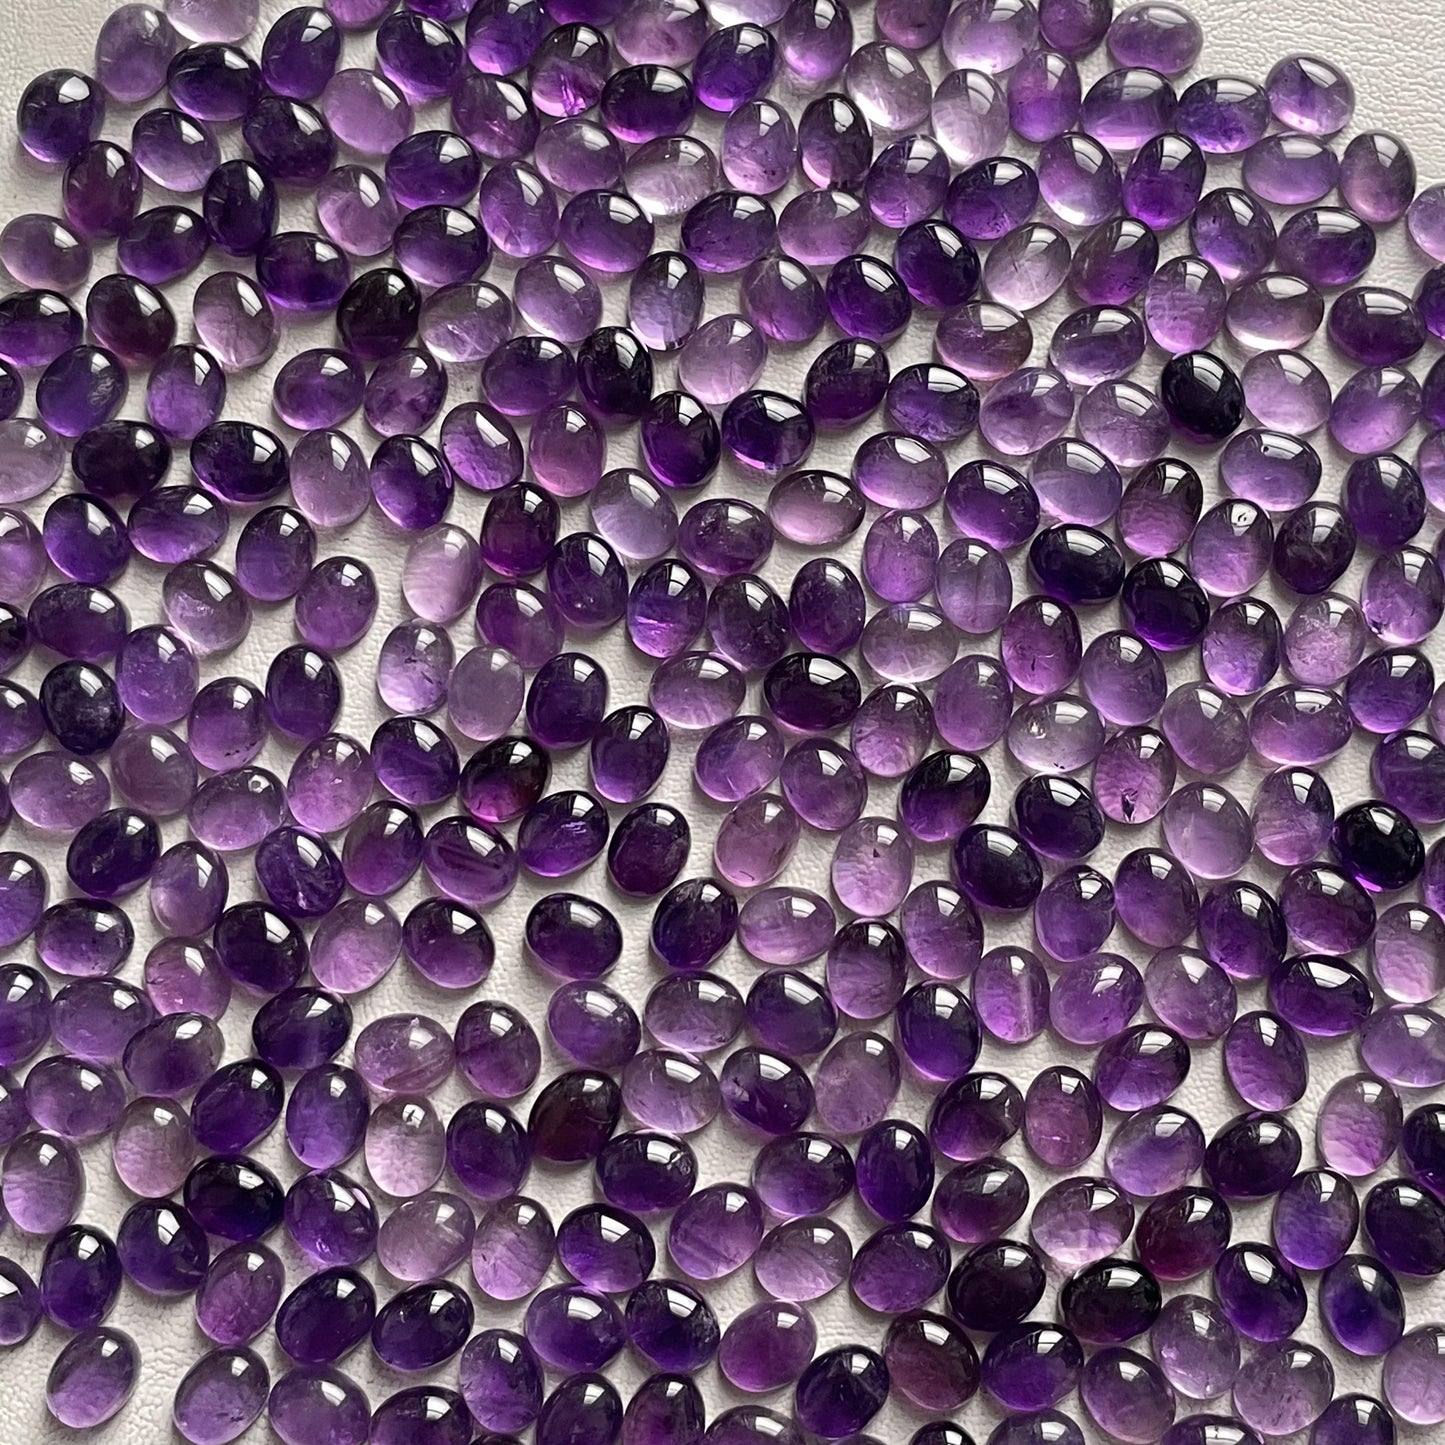 Purple Amethyst 8x10 mm Oval Cabochon